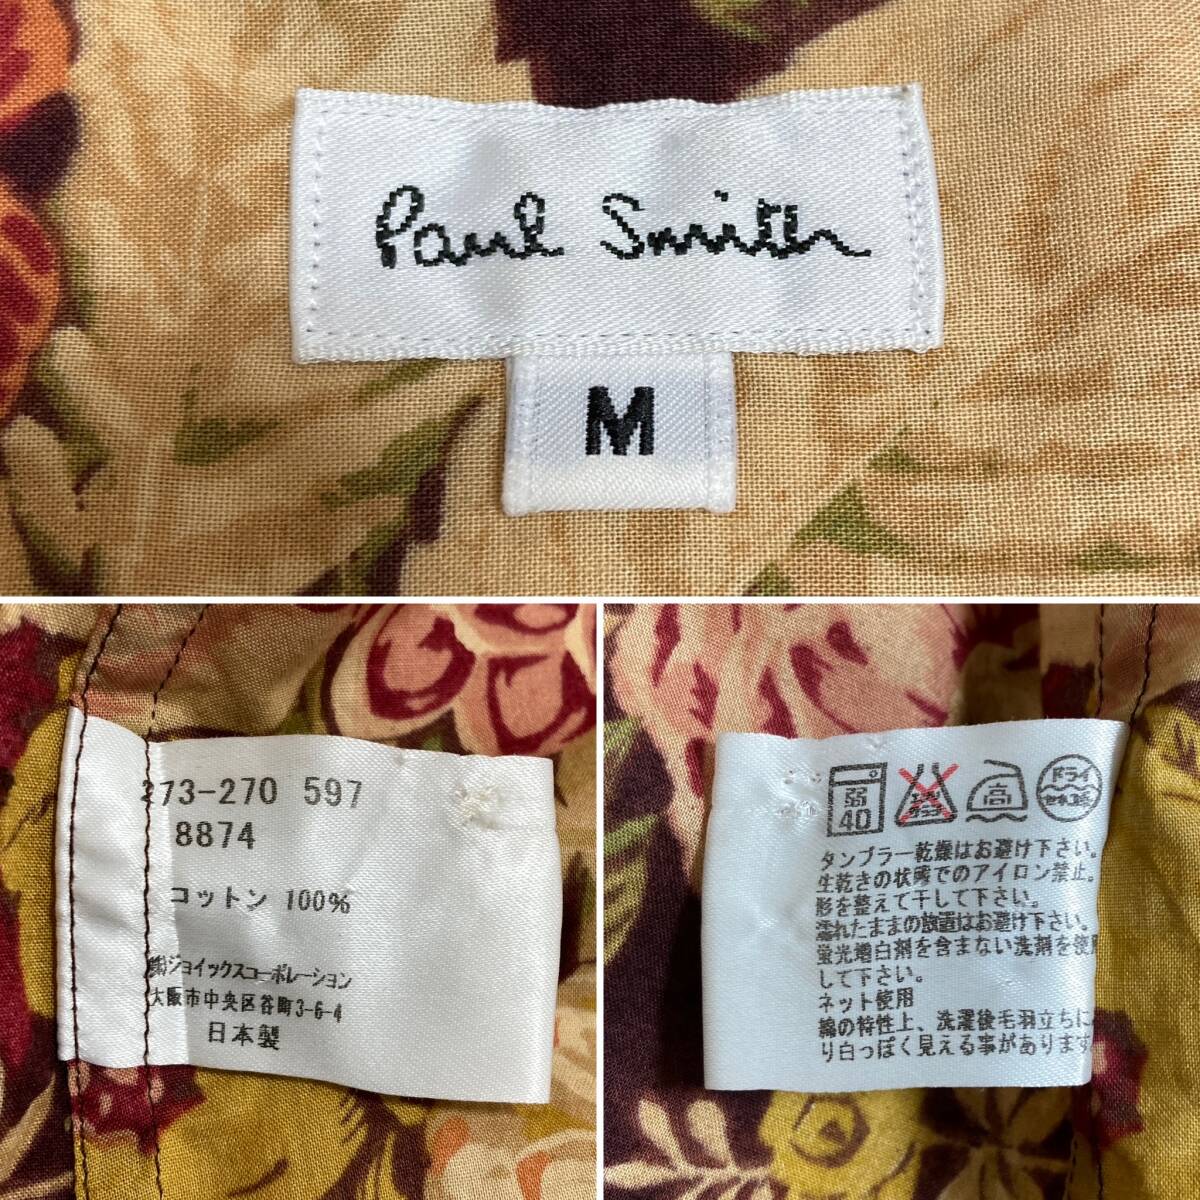 Paul Smith 最高級 本ライン 花柄 長袖シャツ メンズ Mサイズ ポールスミス ボタニカル フローラル 柄シャツ 3120129_画像4